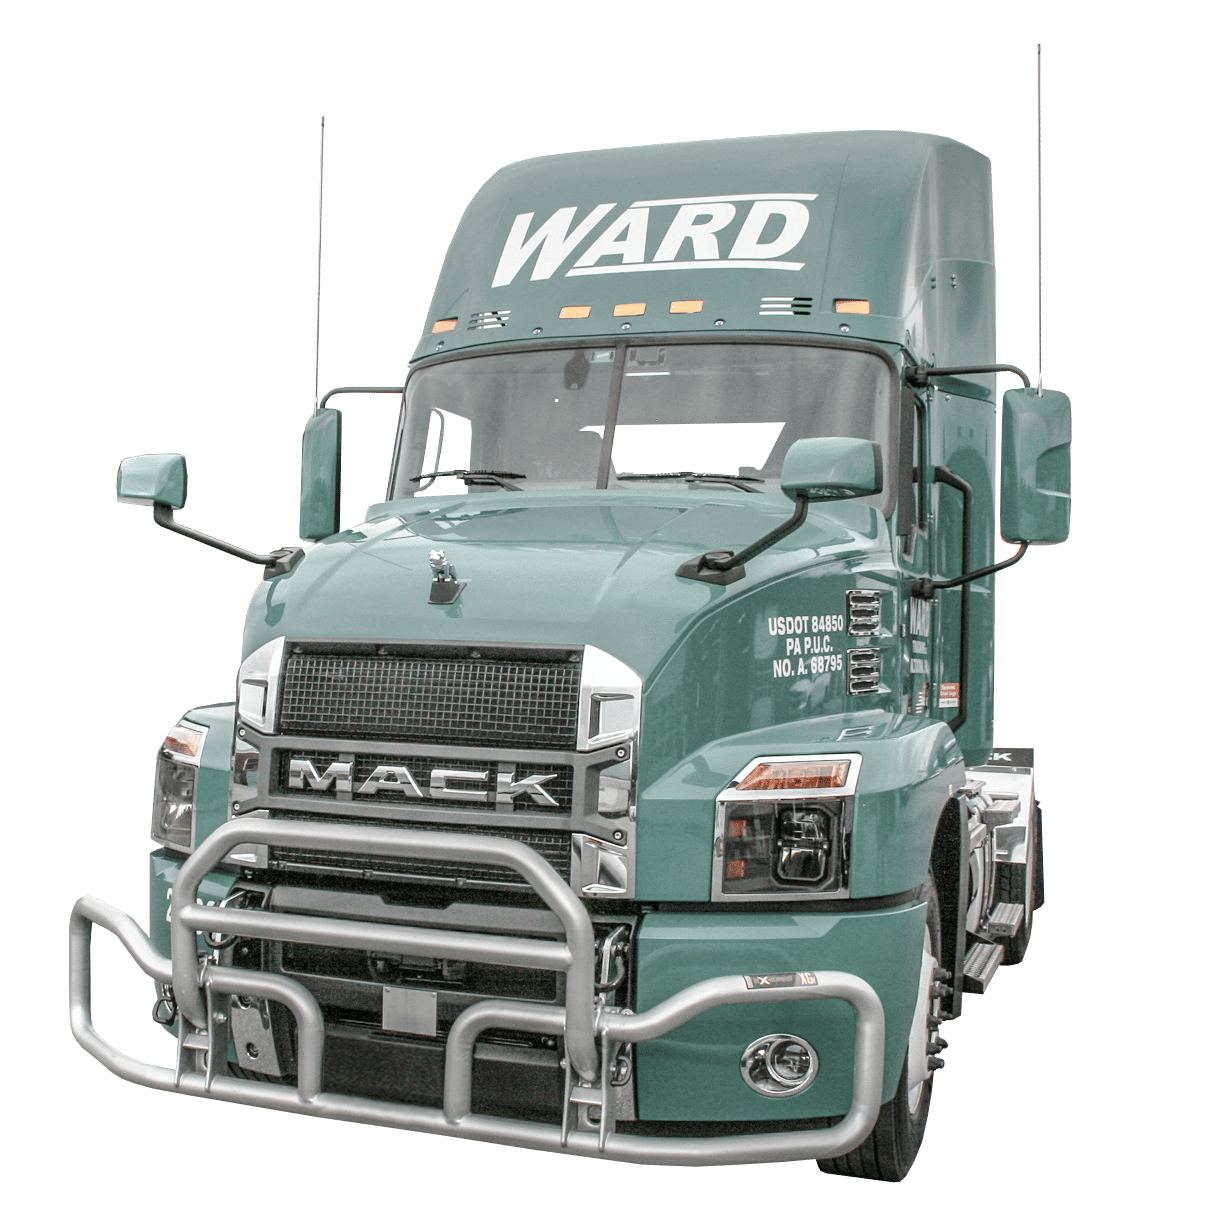 Un camión Mack - Verde - con el nombre de Ward en la parte superior